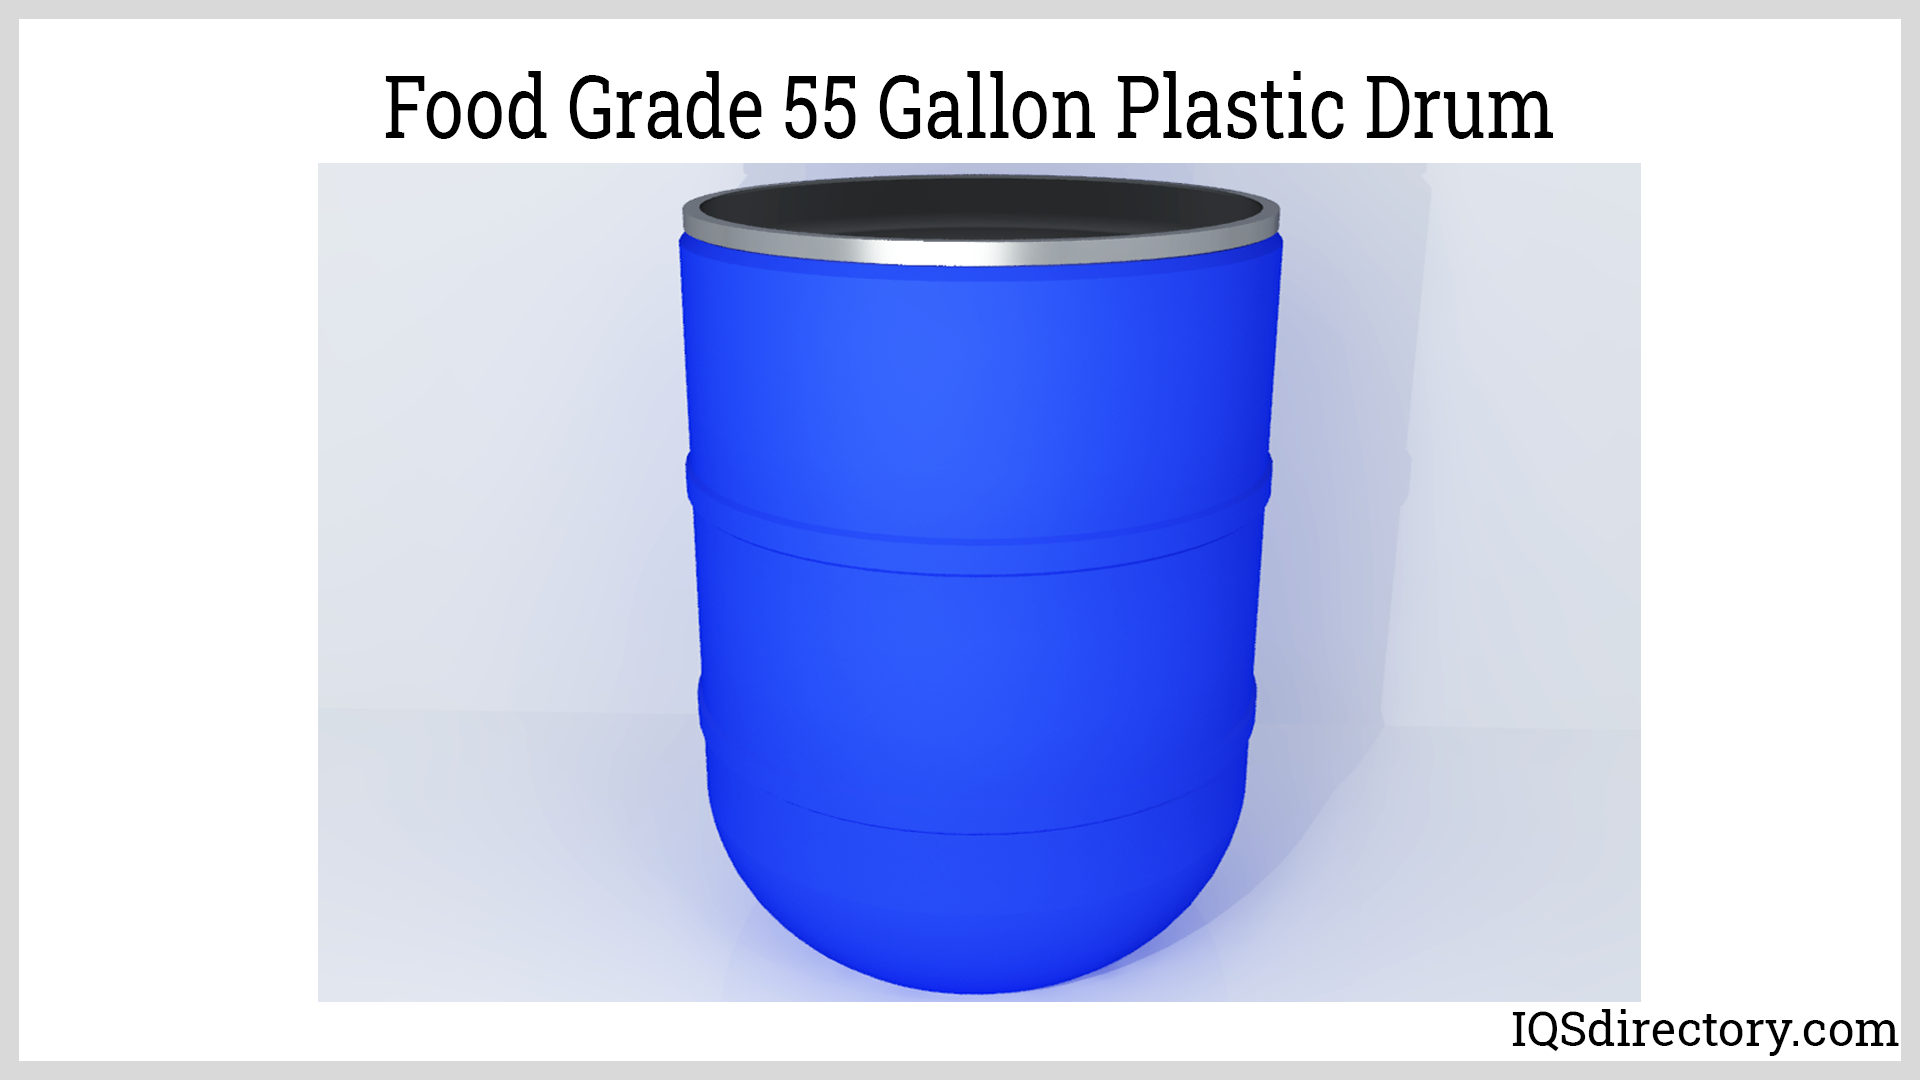 Food Grade 55 Gallon Plastic Drum